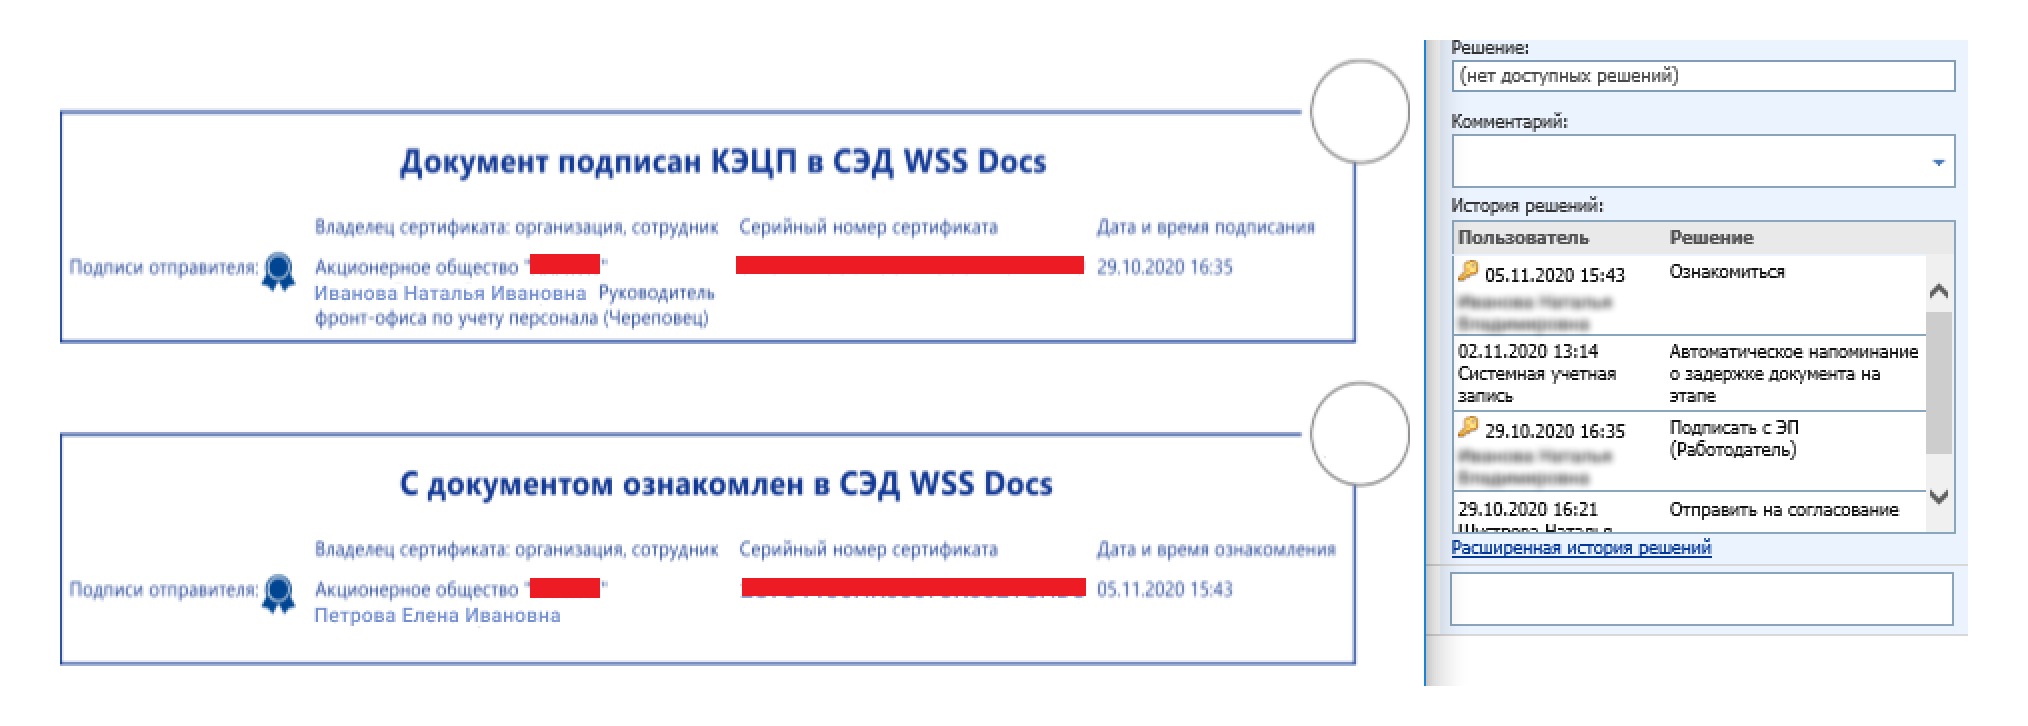 Визуализация электронной подписи в СЭД WSS Docs